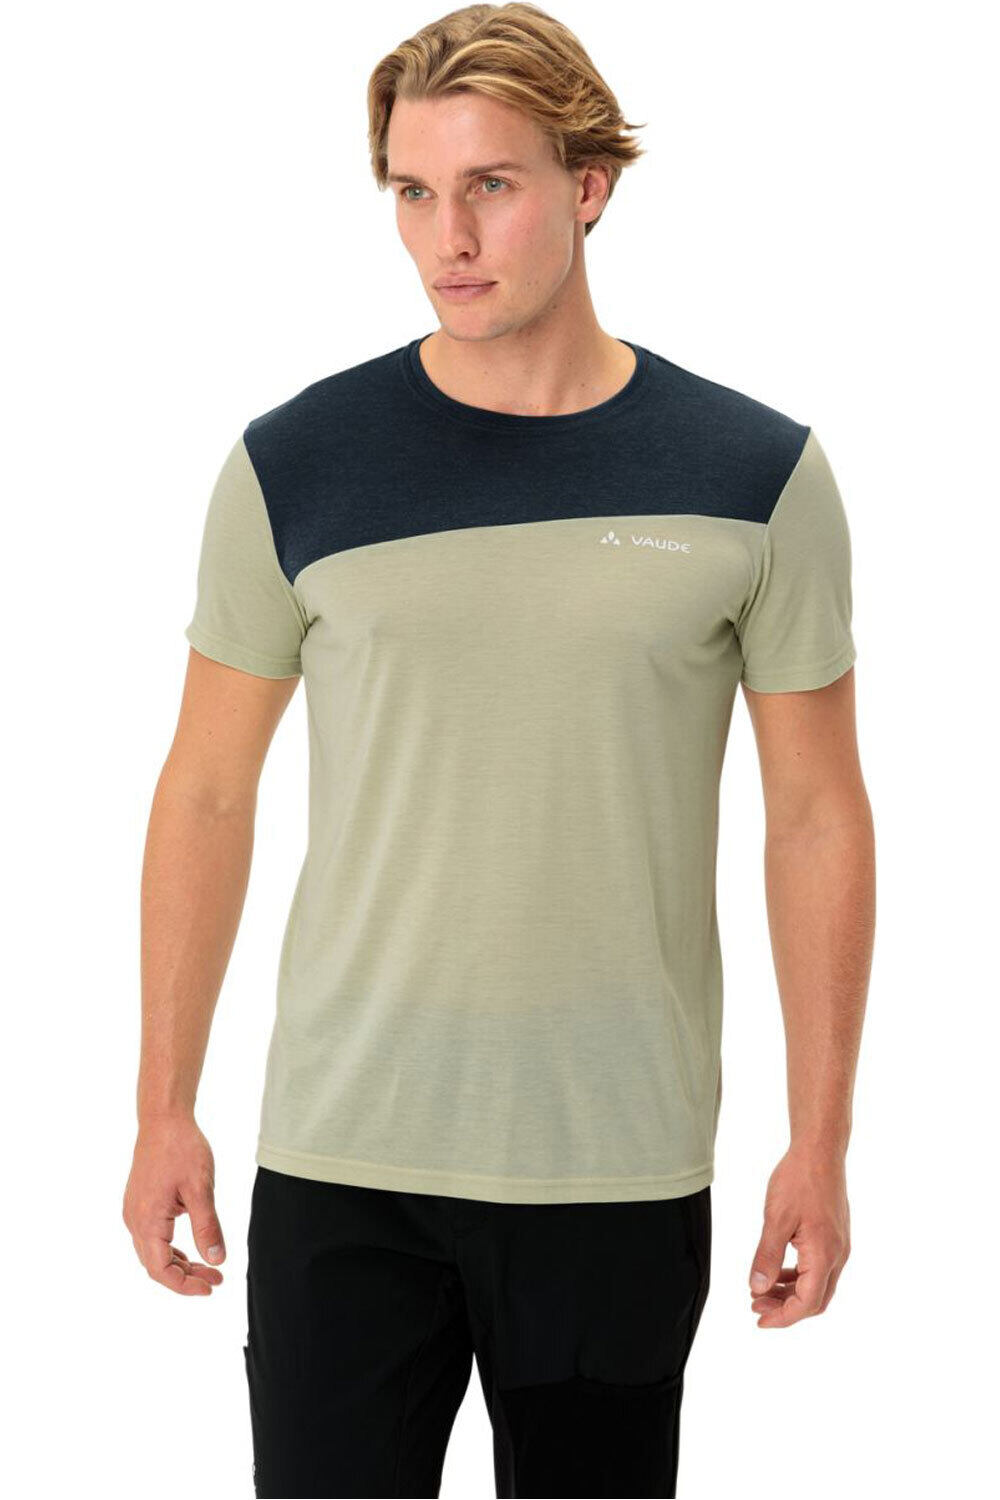 Vaude camiseta montaña manga corta hombre Men's Sveit Shirt vista frontal